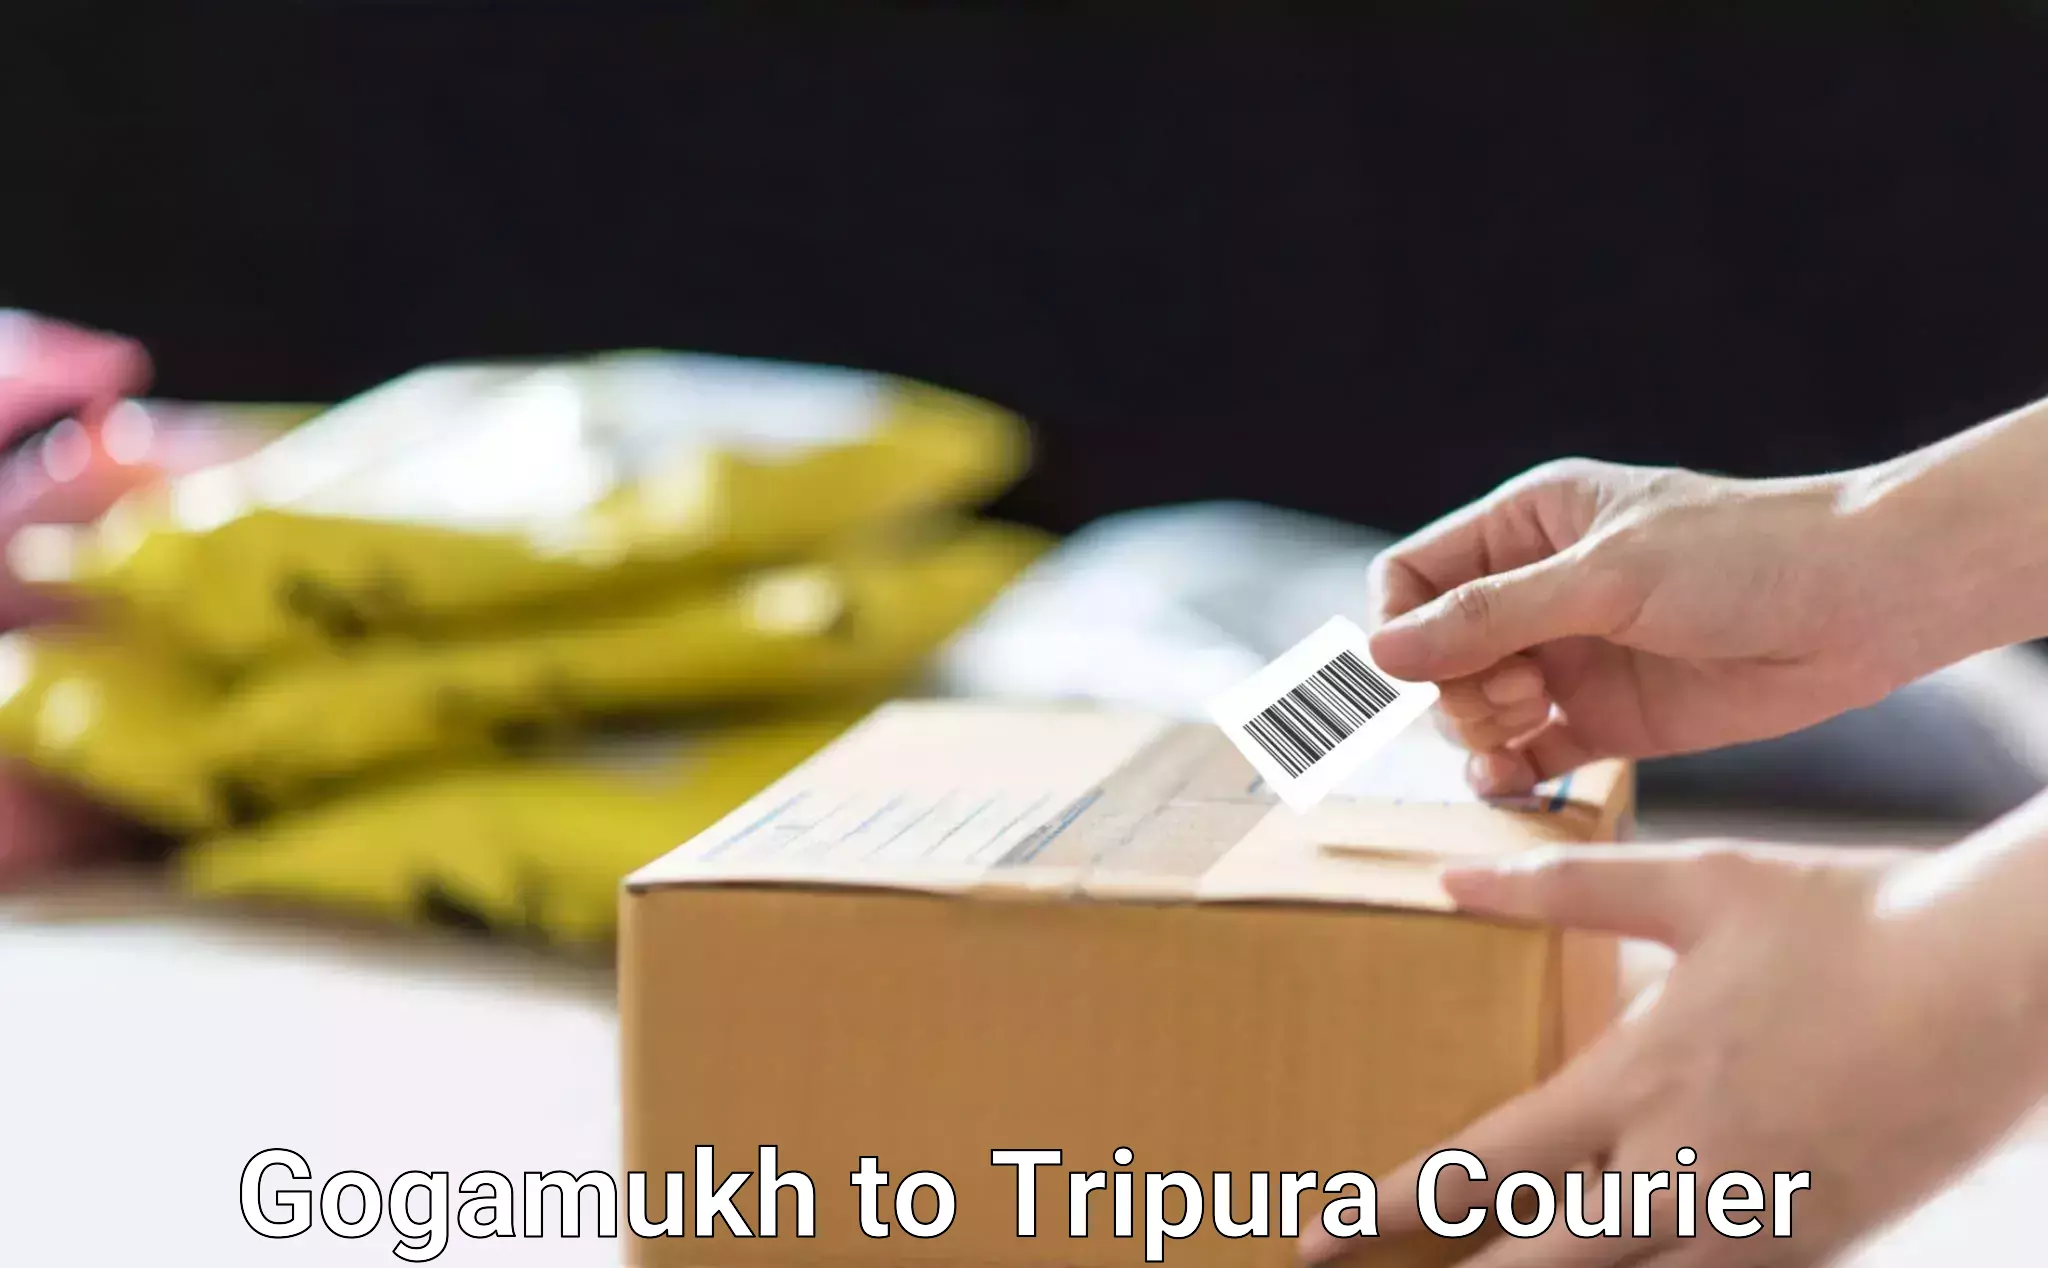 Nationwide shipping services Gogamukh to Tripura